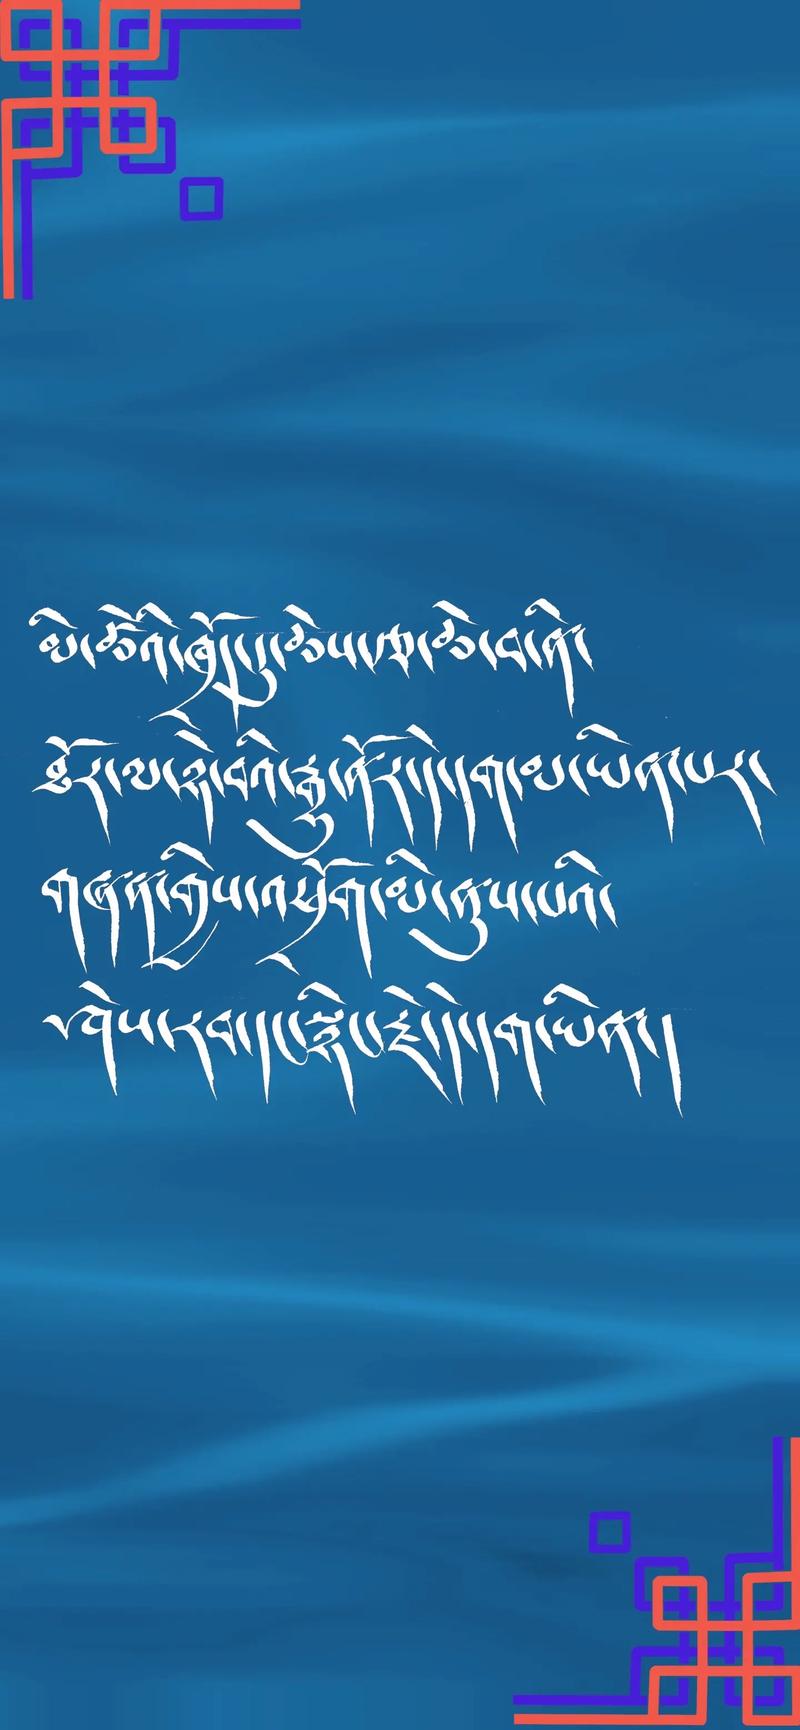 《藏式壁纸》#原创视频 #藏文手写壁纸 - 抖音